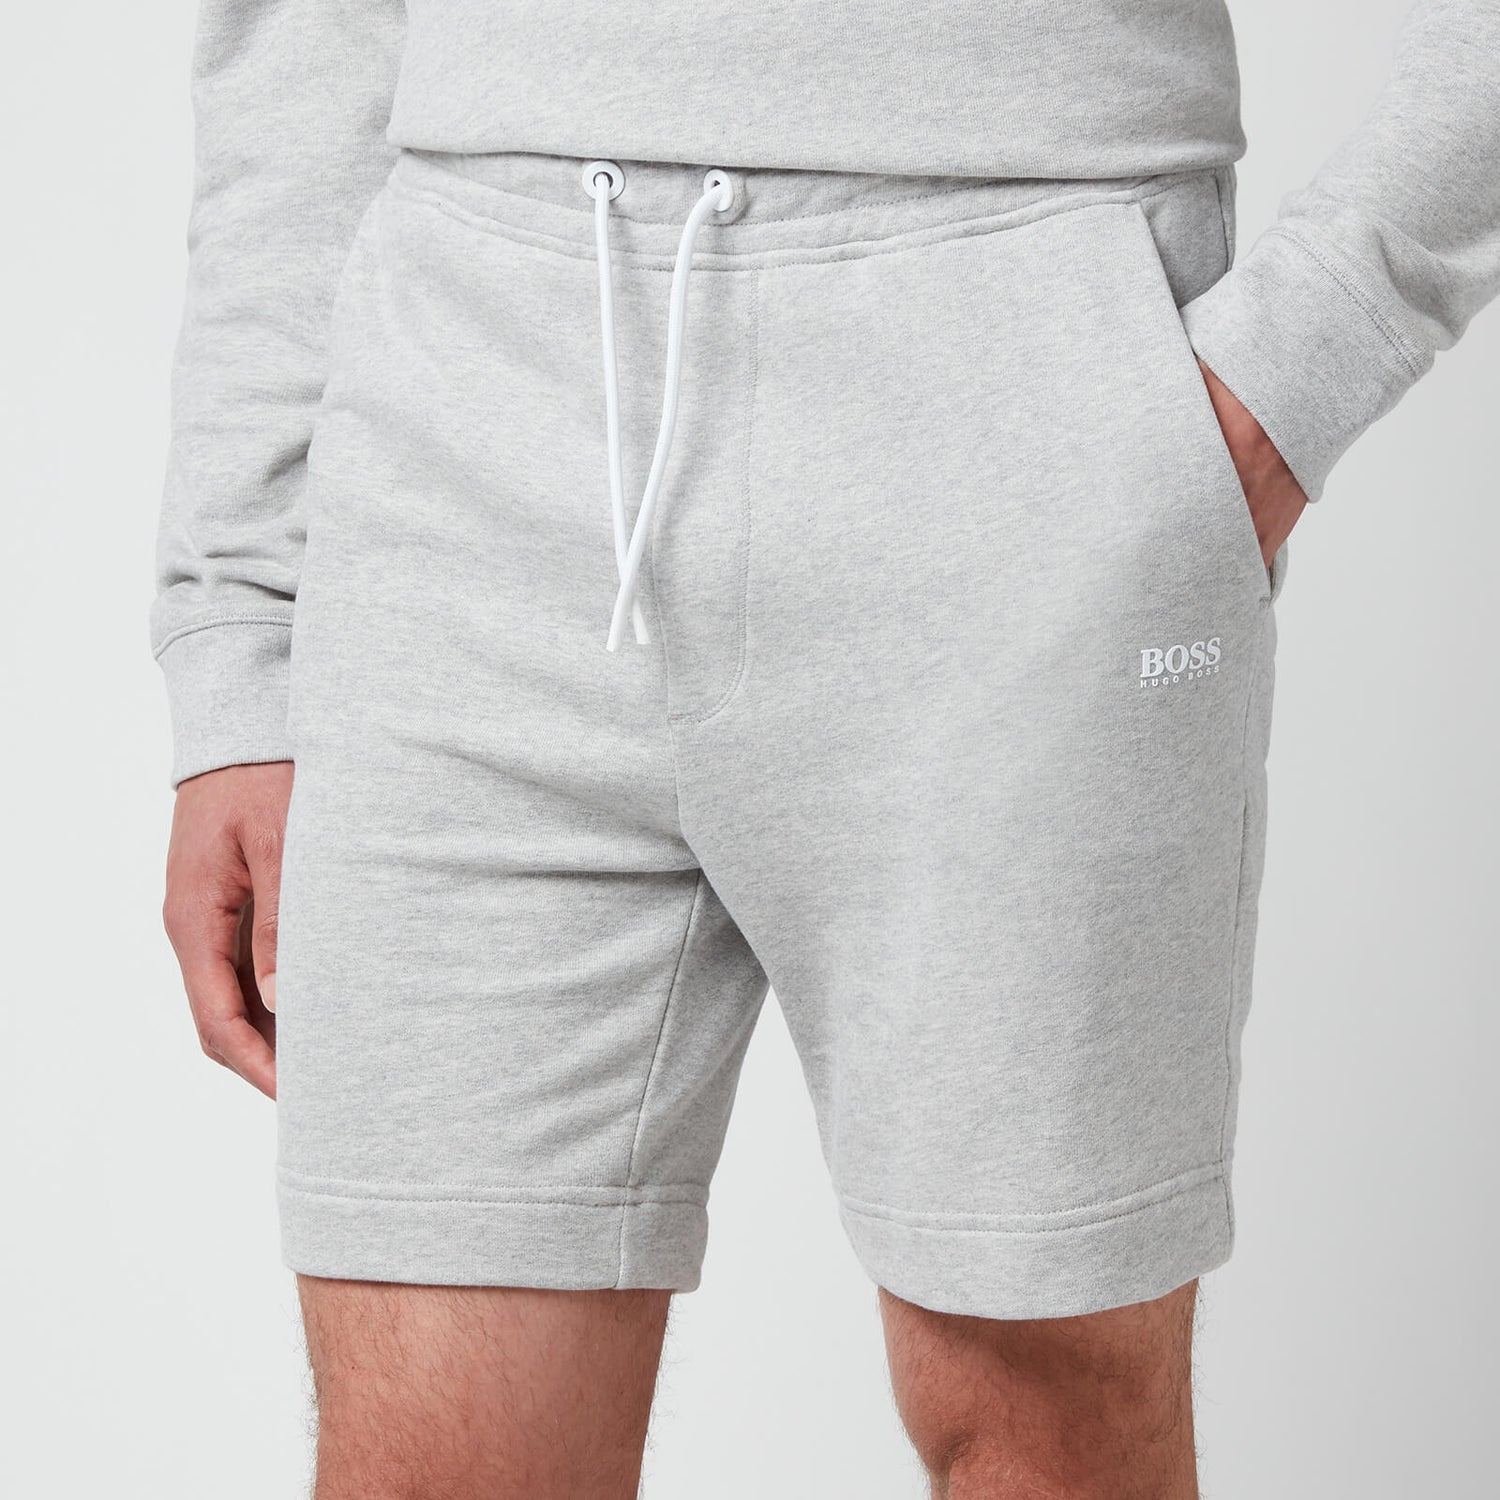 BOSS Casual Men's Skeevito Shorts - Light Pastel Grey